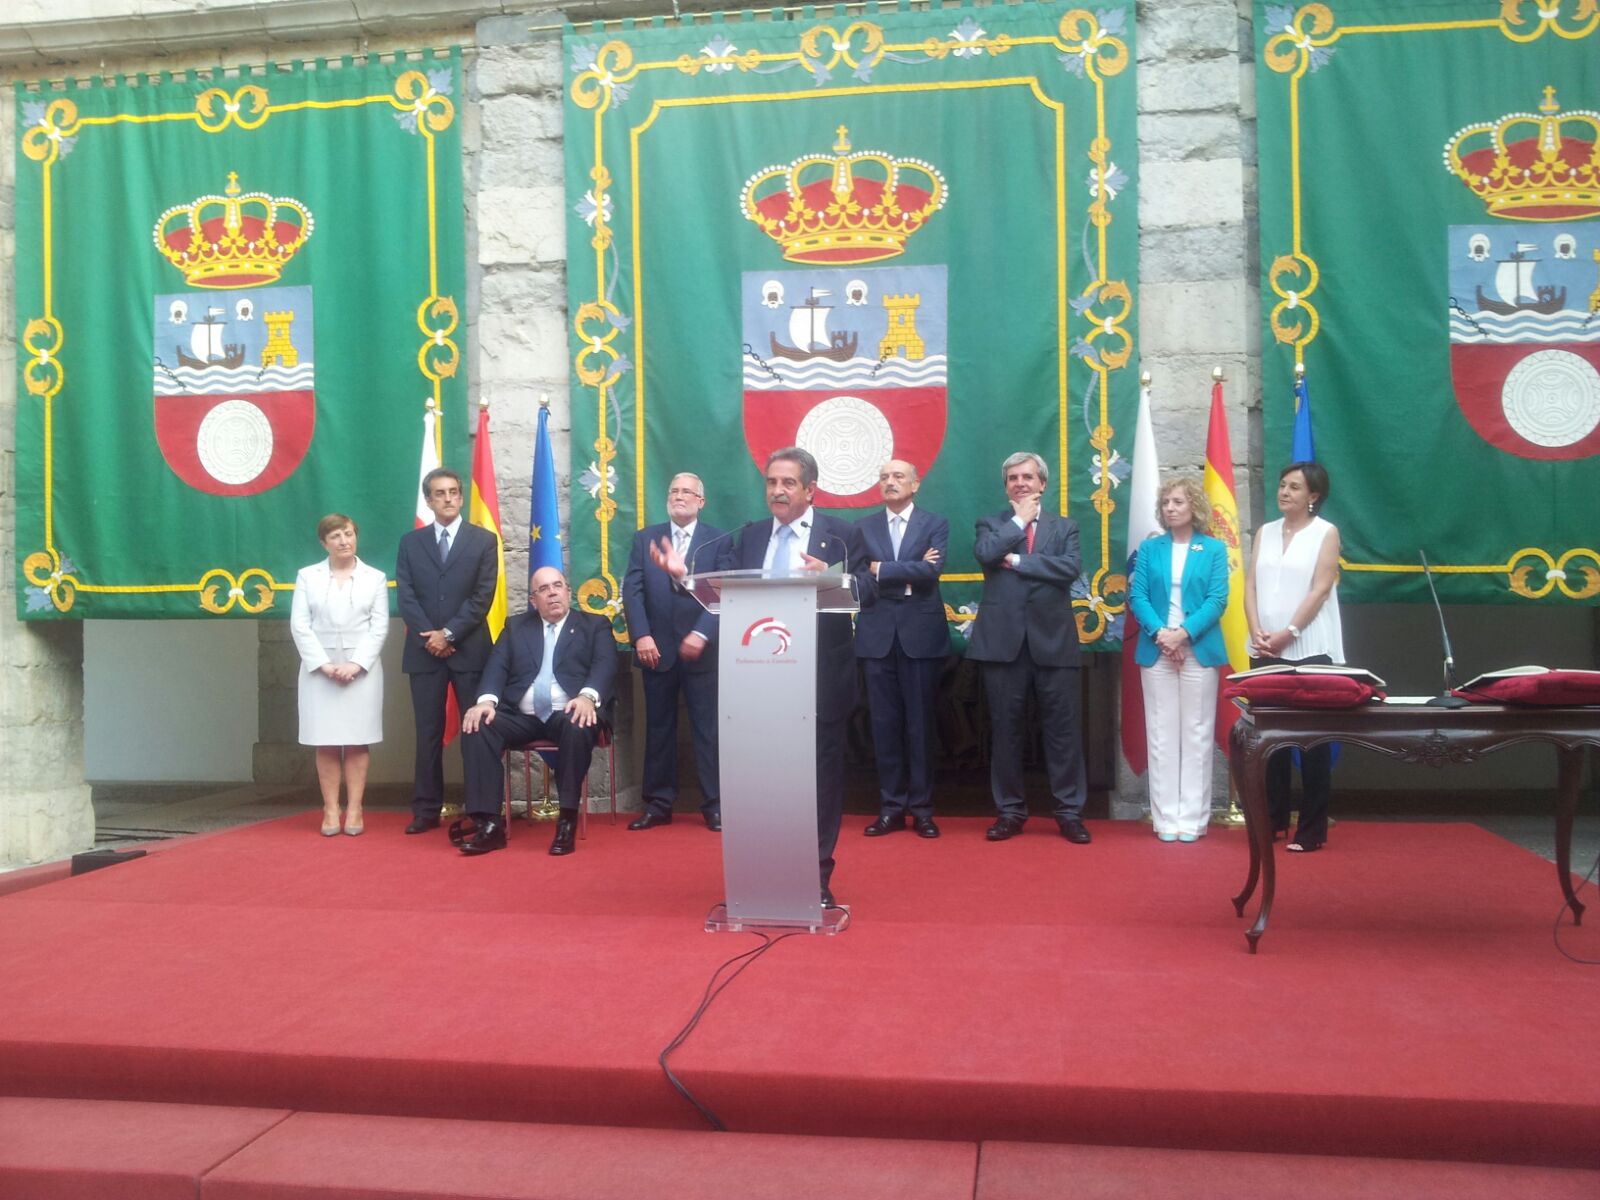 Los miembros del Gobierno de Cantabria